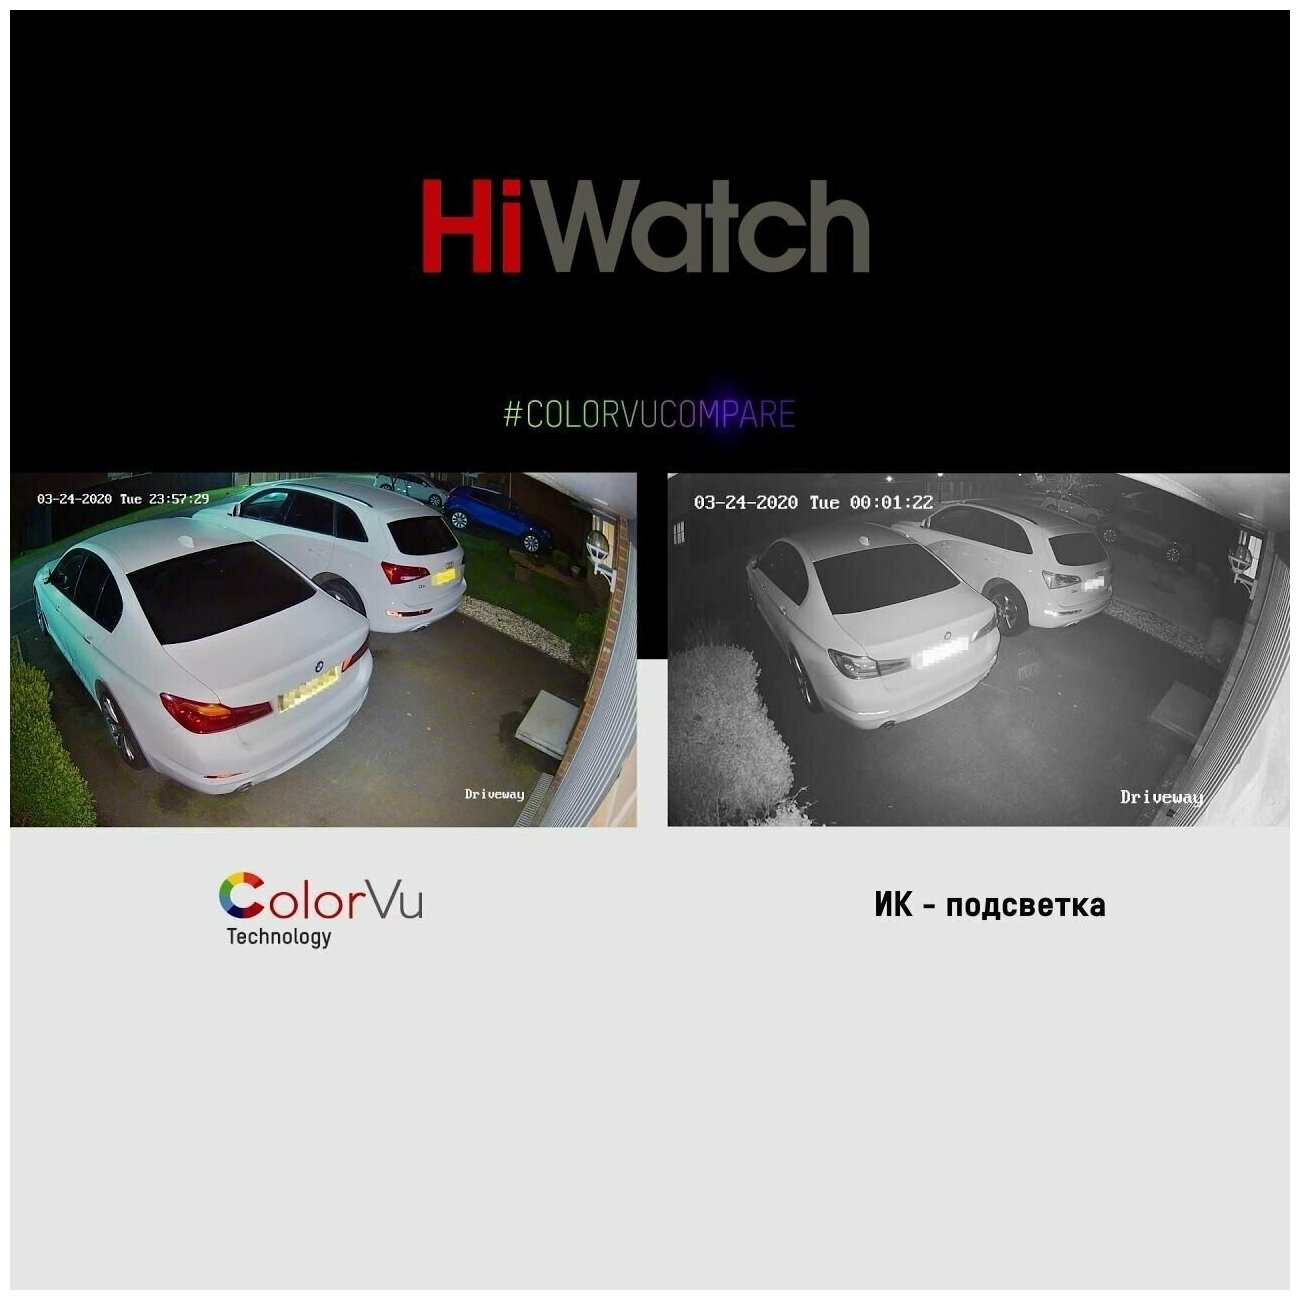 Комплект уличного видеонаблюдения 24/7 цветного (ColorVu) HD-TVI с 4 камерами 2MP HiWatch 20 Detection Motion